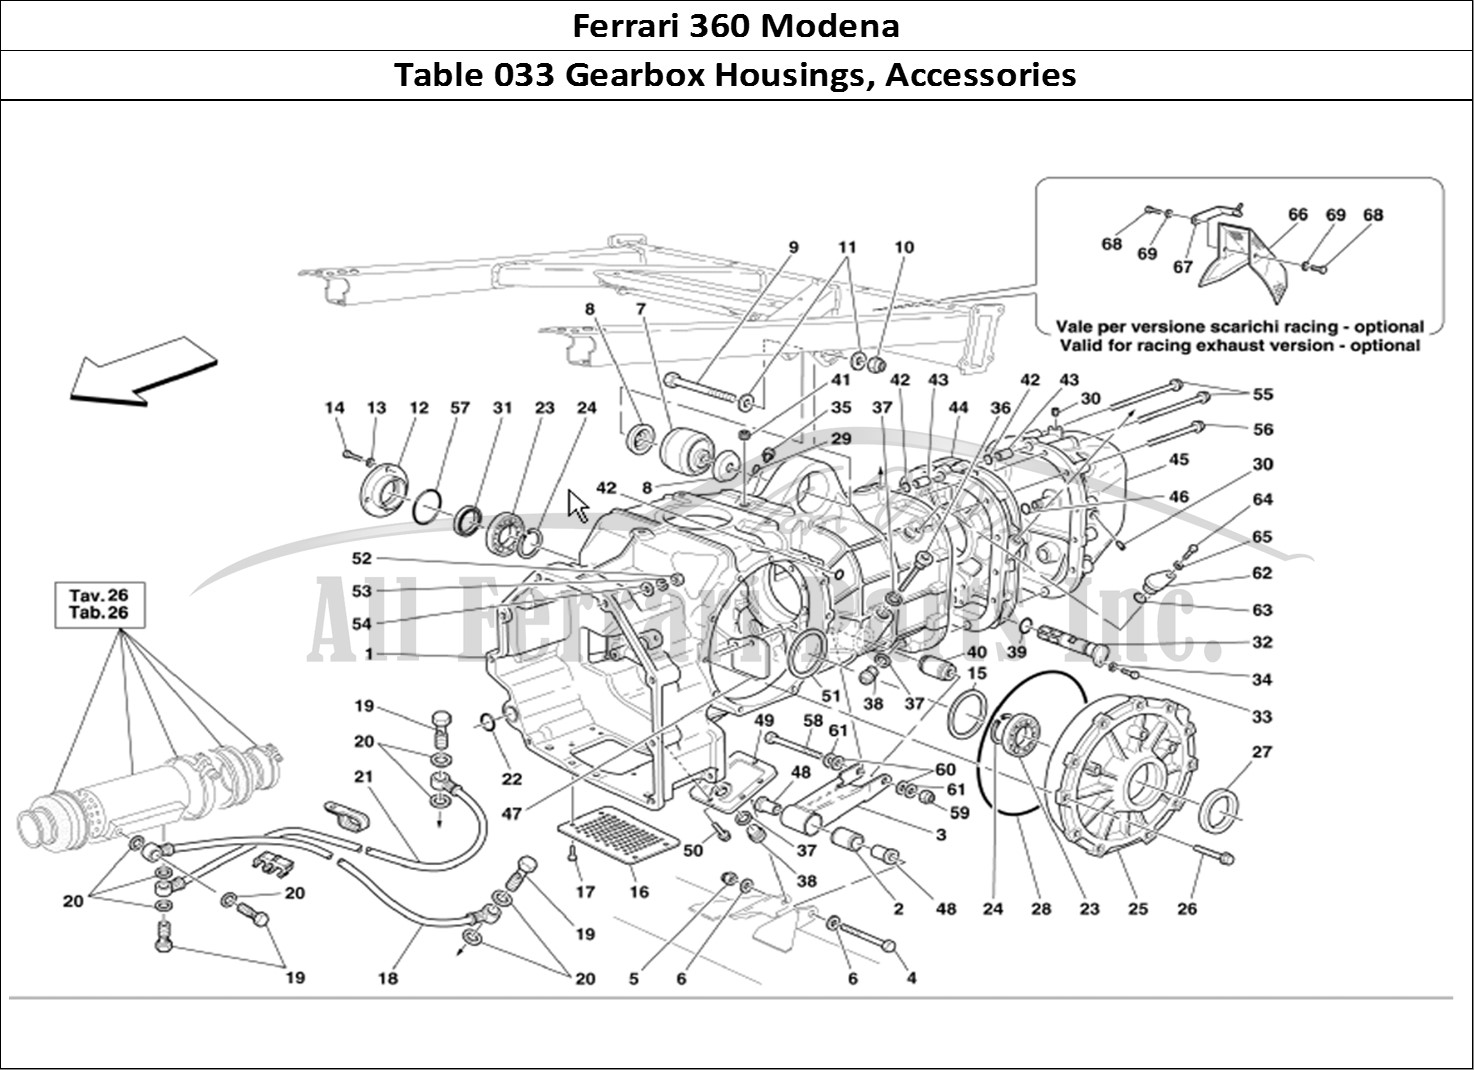 Ferrari Parts Ferrari 360 Modena Page 033 Gearbox Covers